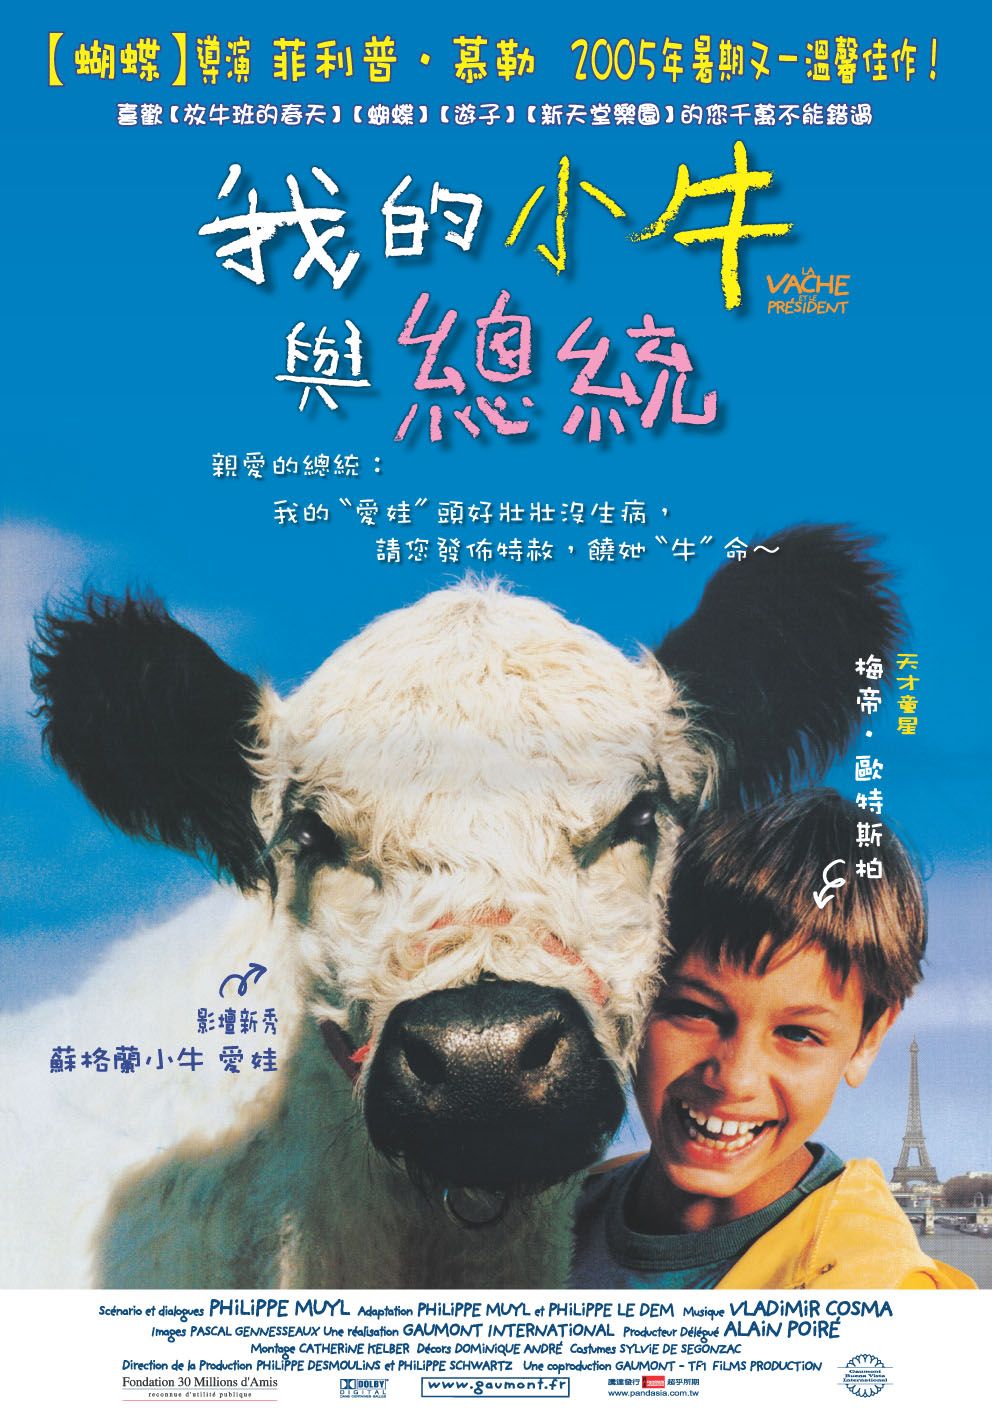 Extra Large Movie Poster Image for Vache et le président, La 